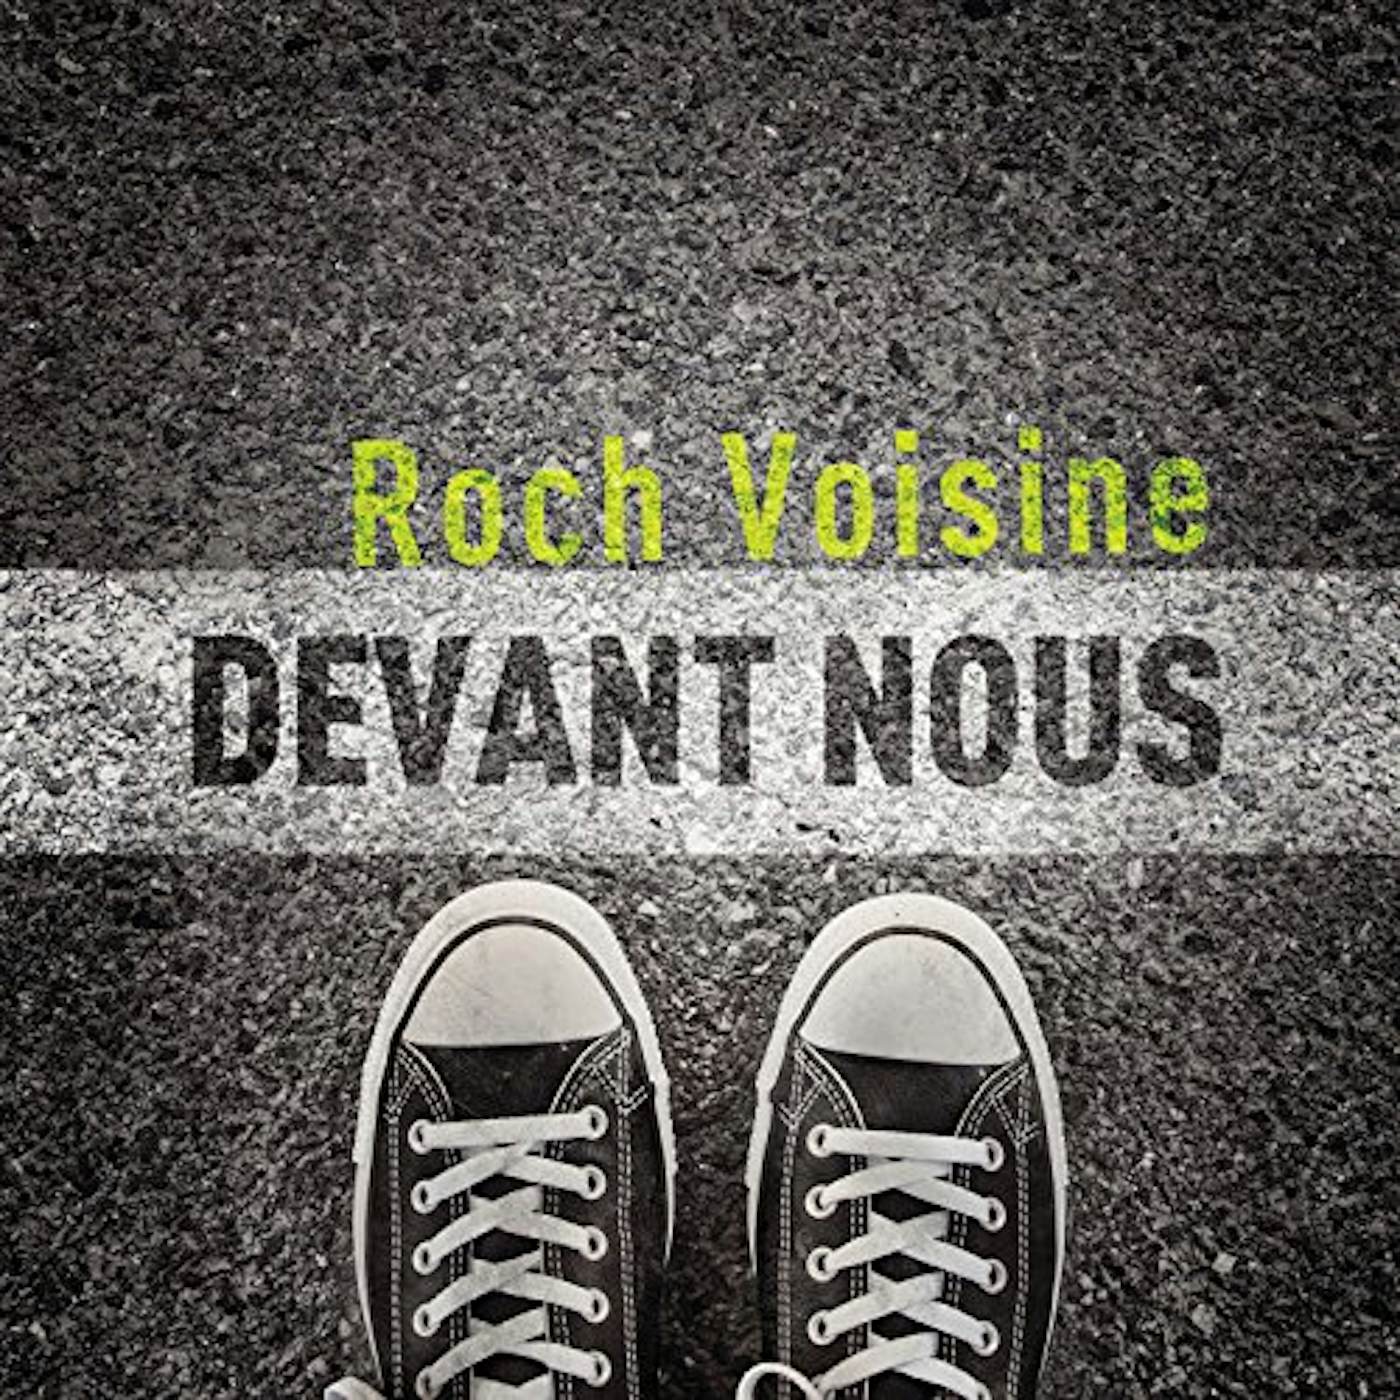 Roch Voisine DEVANT NOUS CD